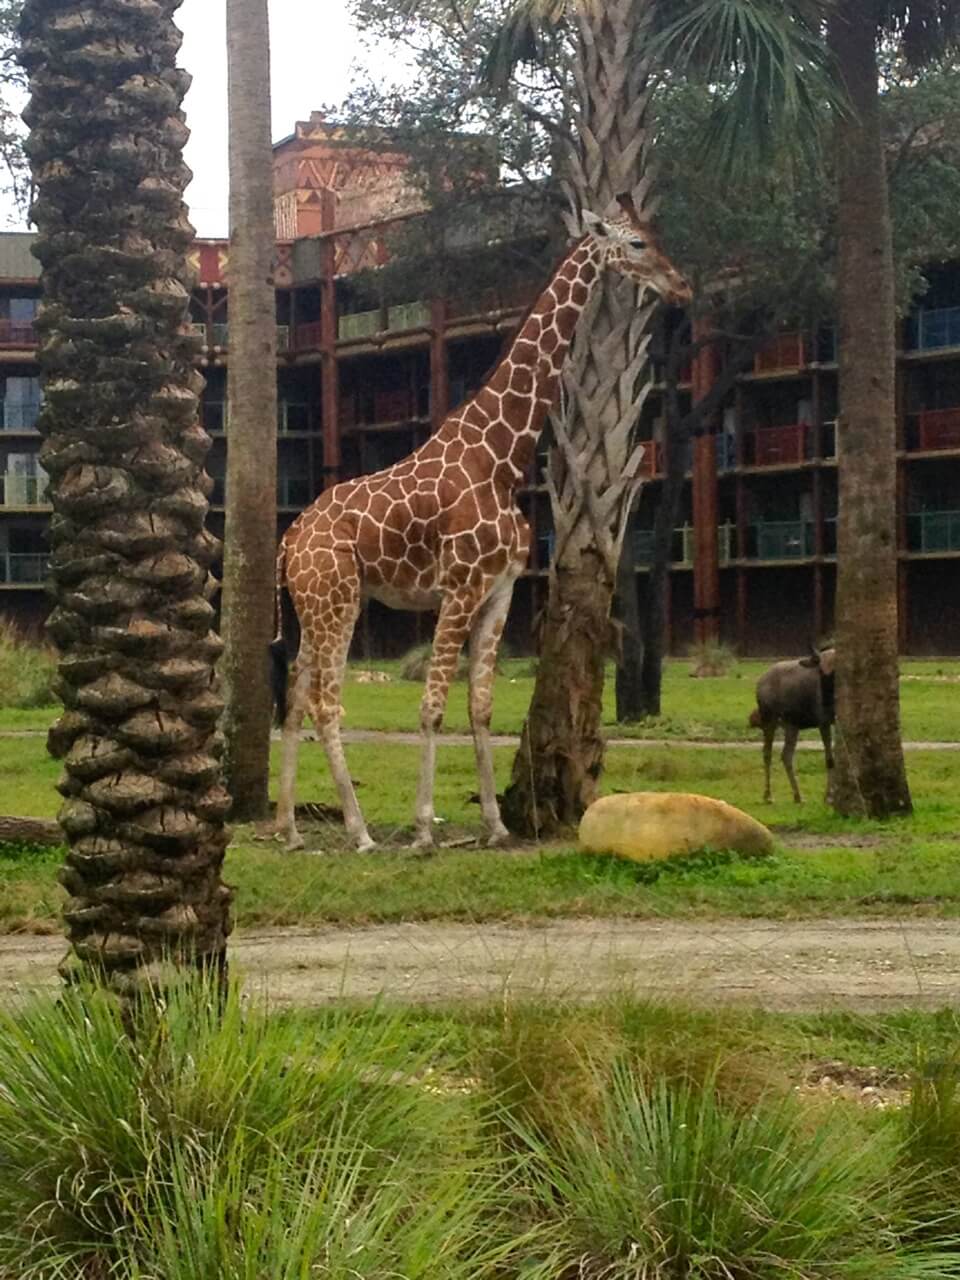 Giraffe on the Savannah at Disney's Kidani Village.